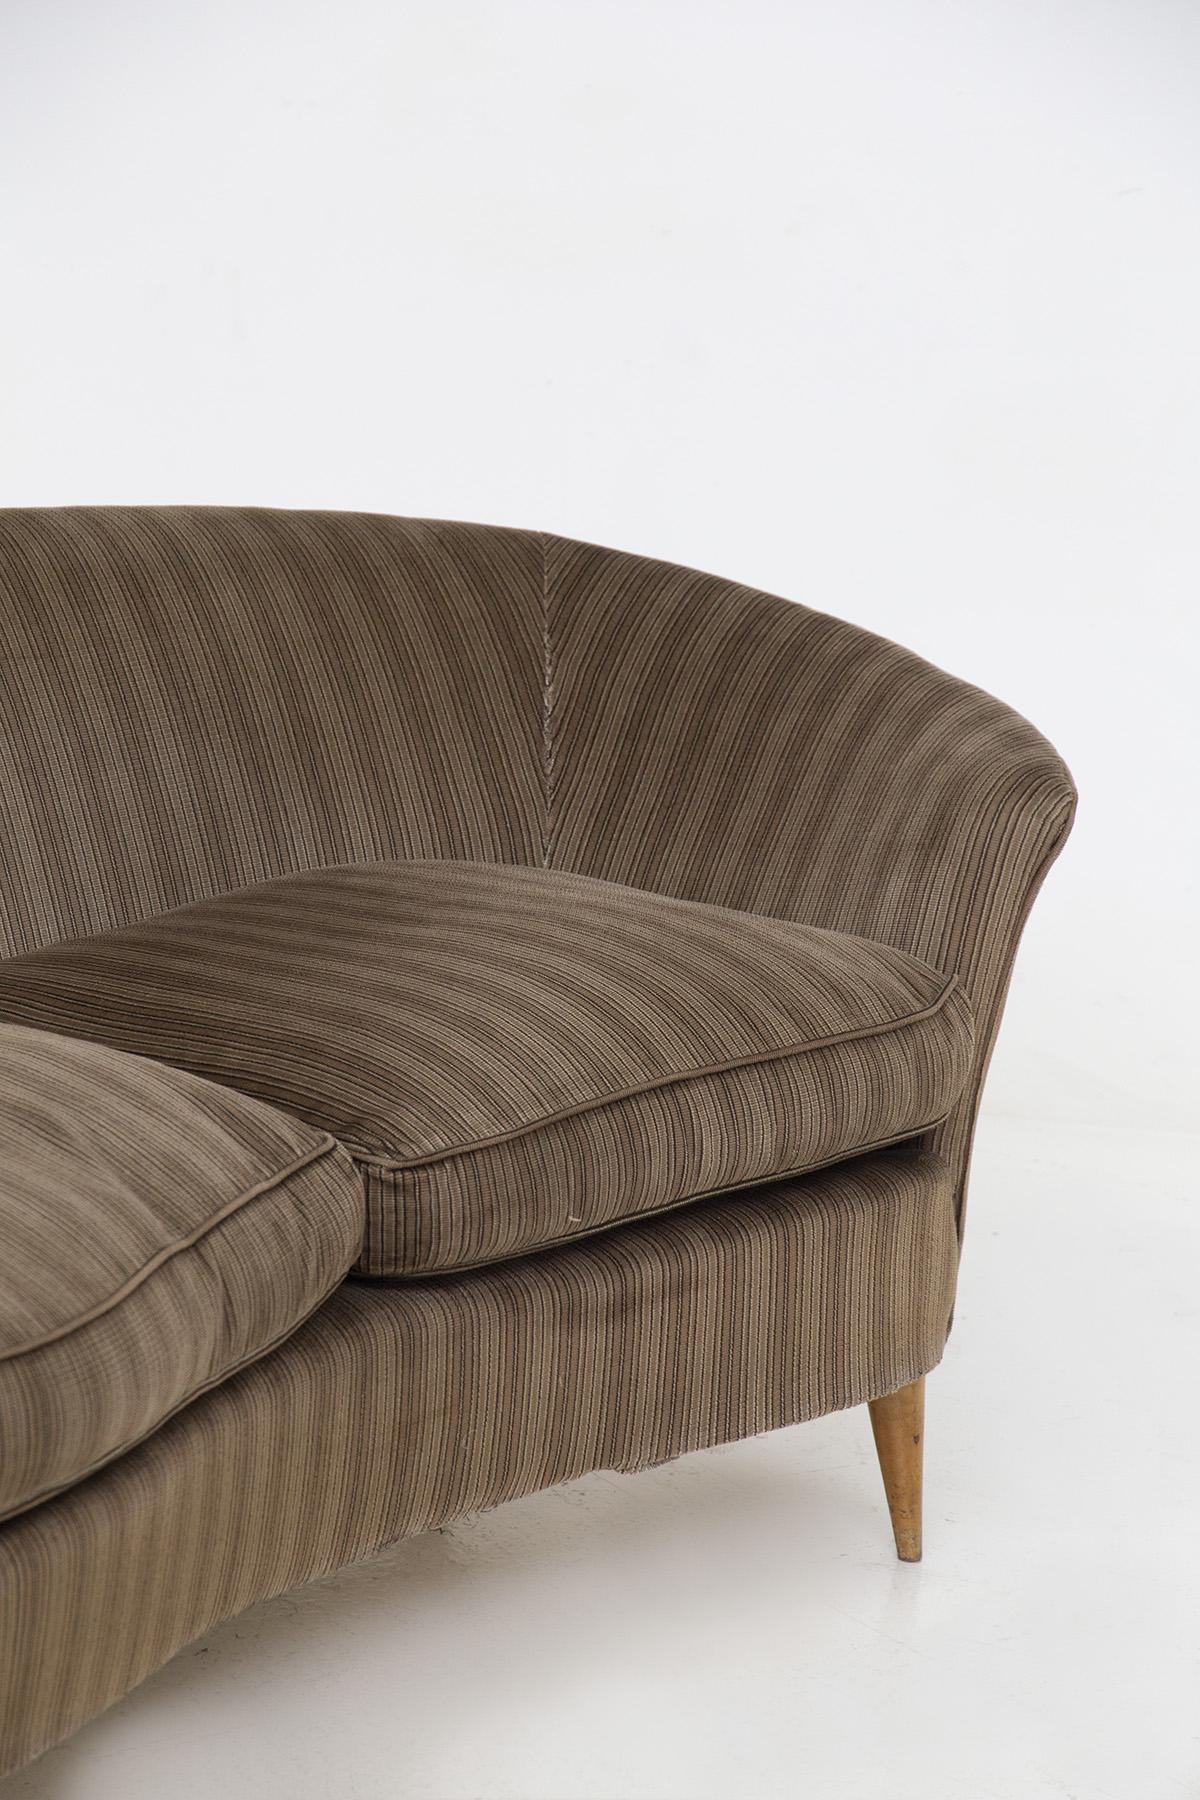 Velvet Italian Sofa attributed to Ico Parisi in original fabric For Sale